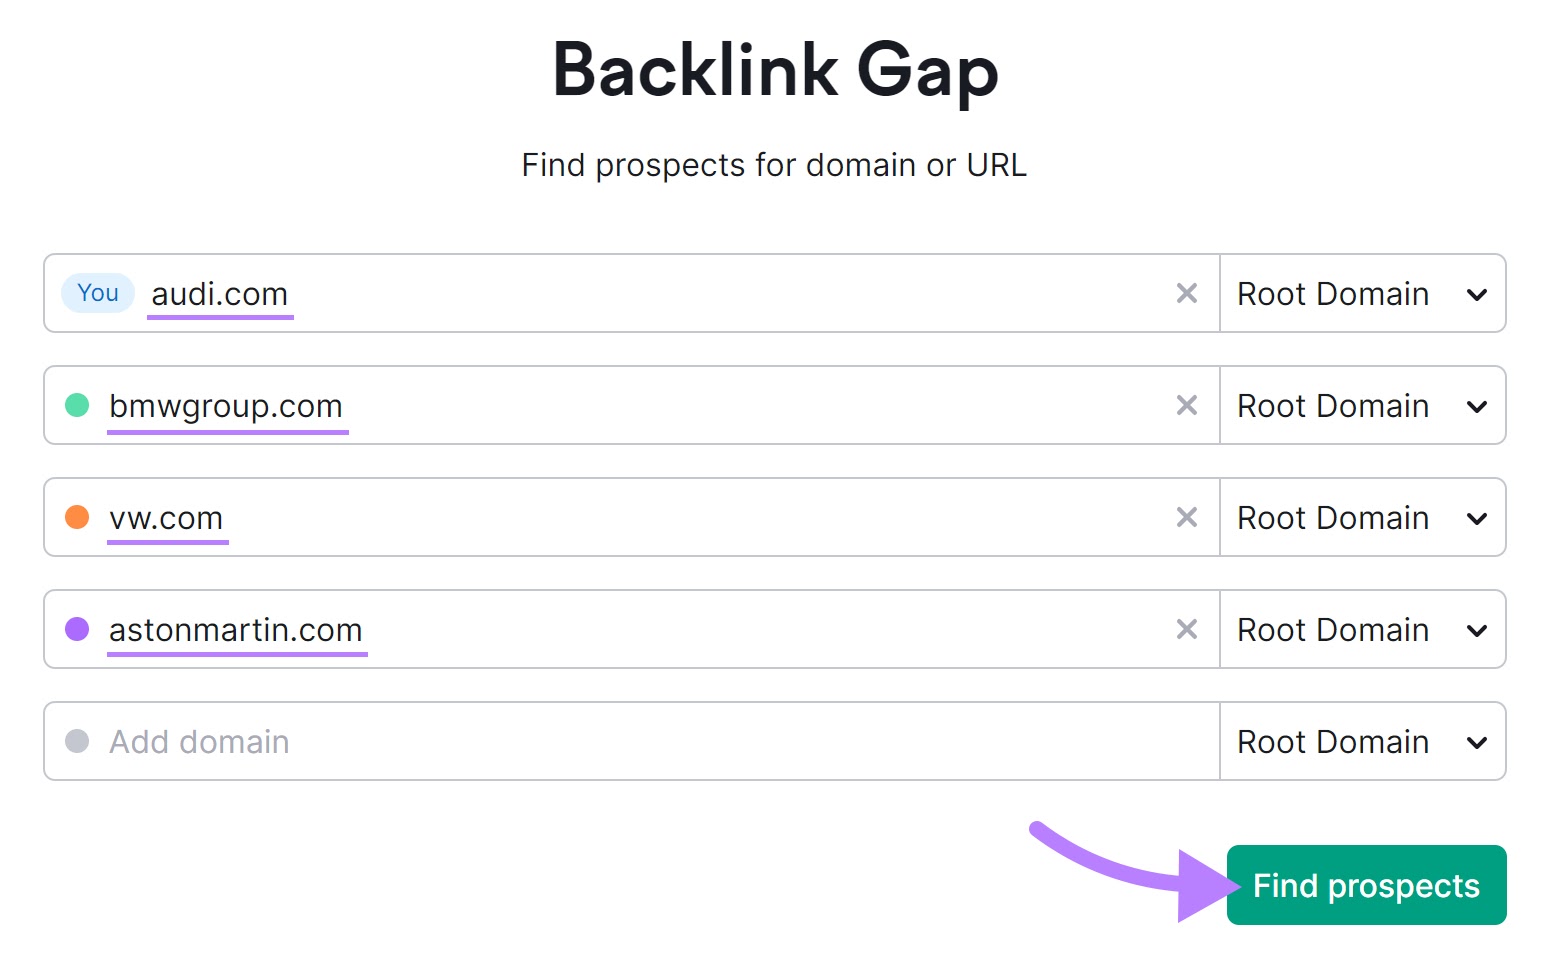 "audi.com" "bmwgroup.com" "vw.com" and "astonmartin.com" entered into the Backlink Gap tool